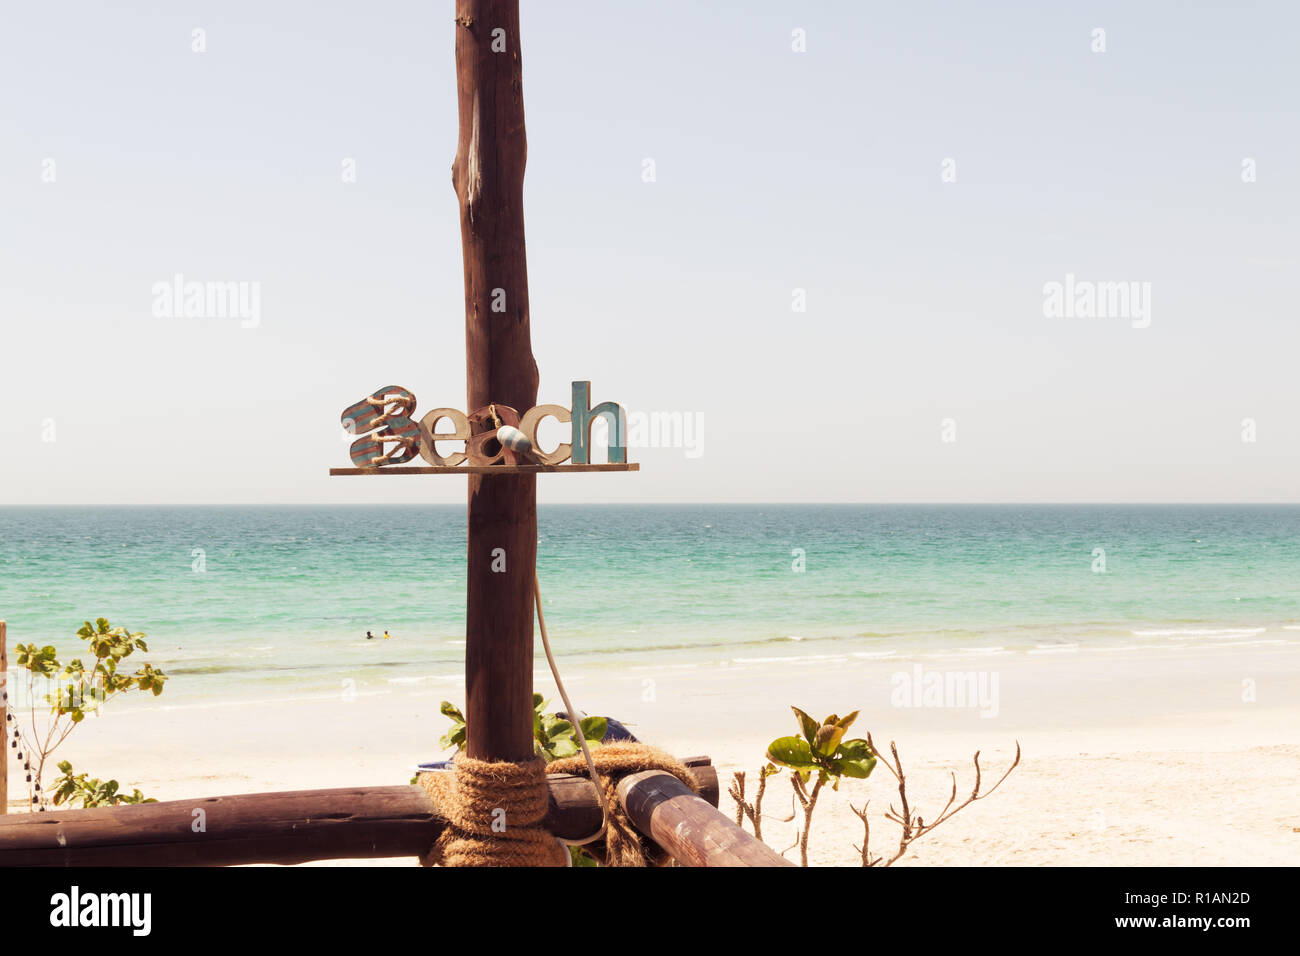 Playa de madera signo inscripción verano en la playa, el descanso, la arena, el mar. Placa de madera con la inscripción en una placa en la playa, el mar de fondo. La vocación de las decoraciones. Foto de stock